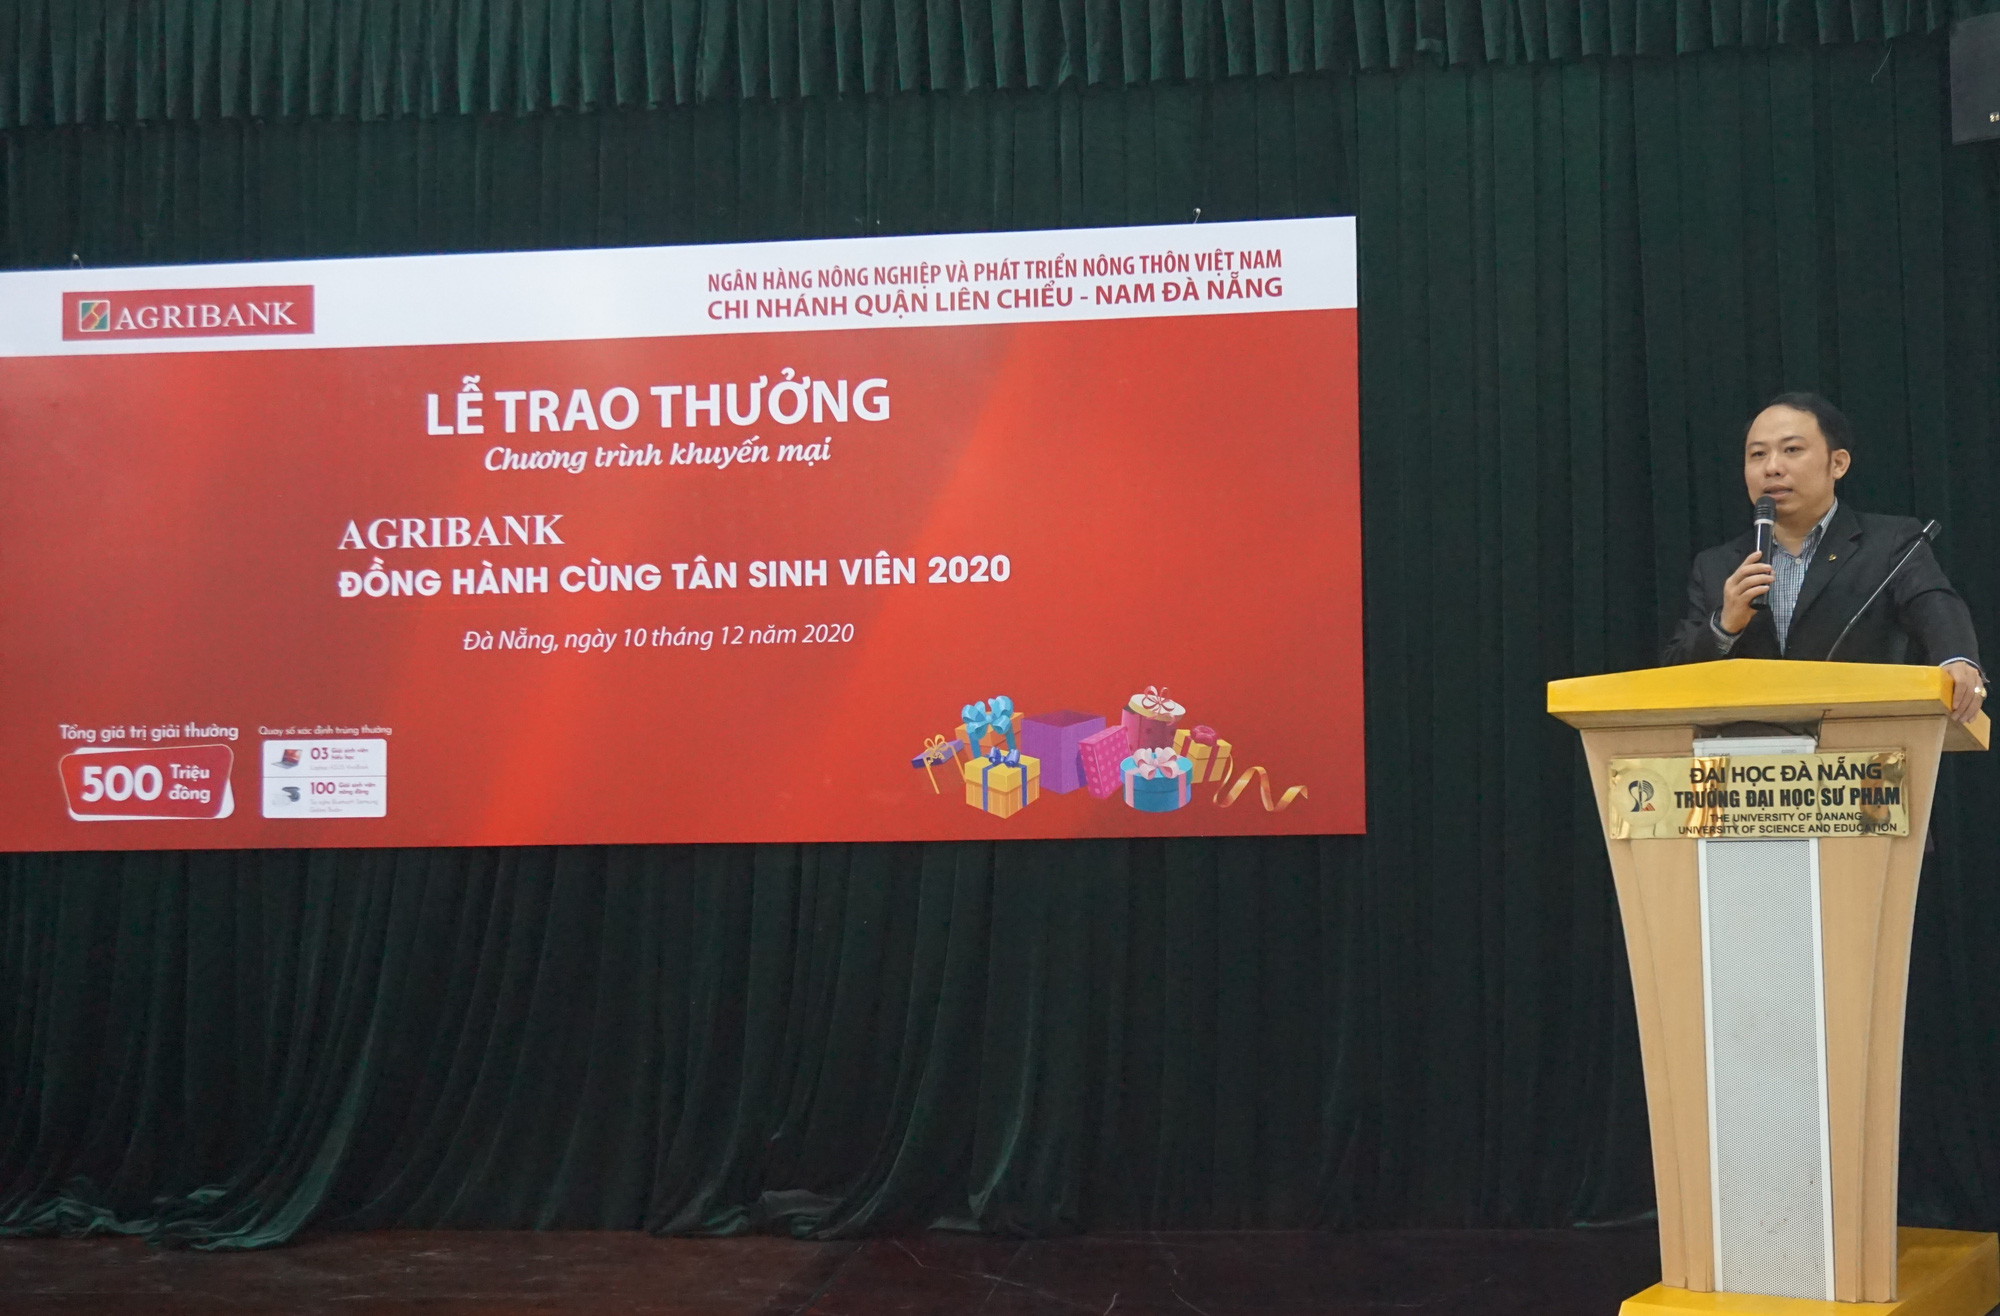 Agribank đồng hành cùng tân sinh viên Đà Nẵng 2020 - Ảnh 3.